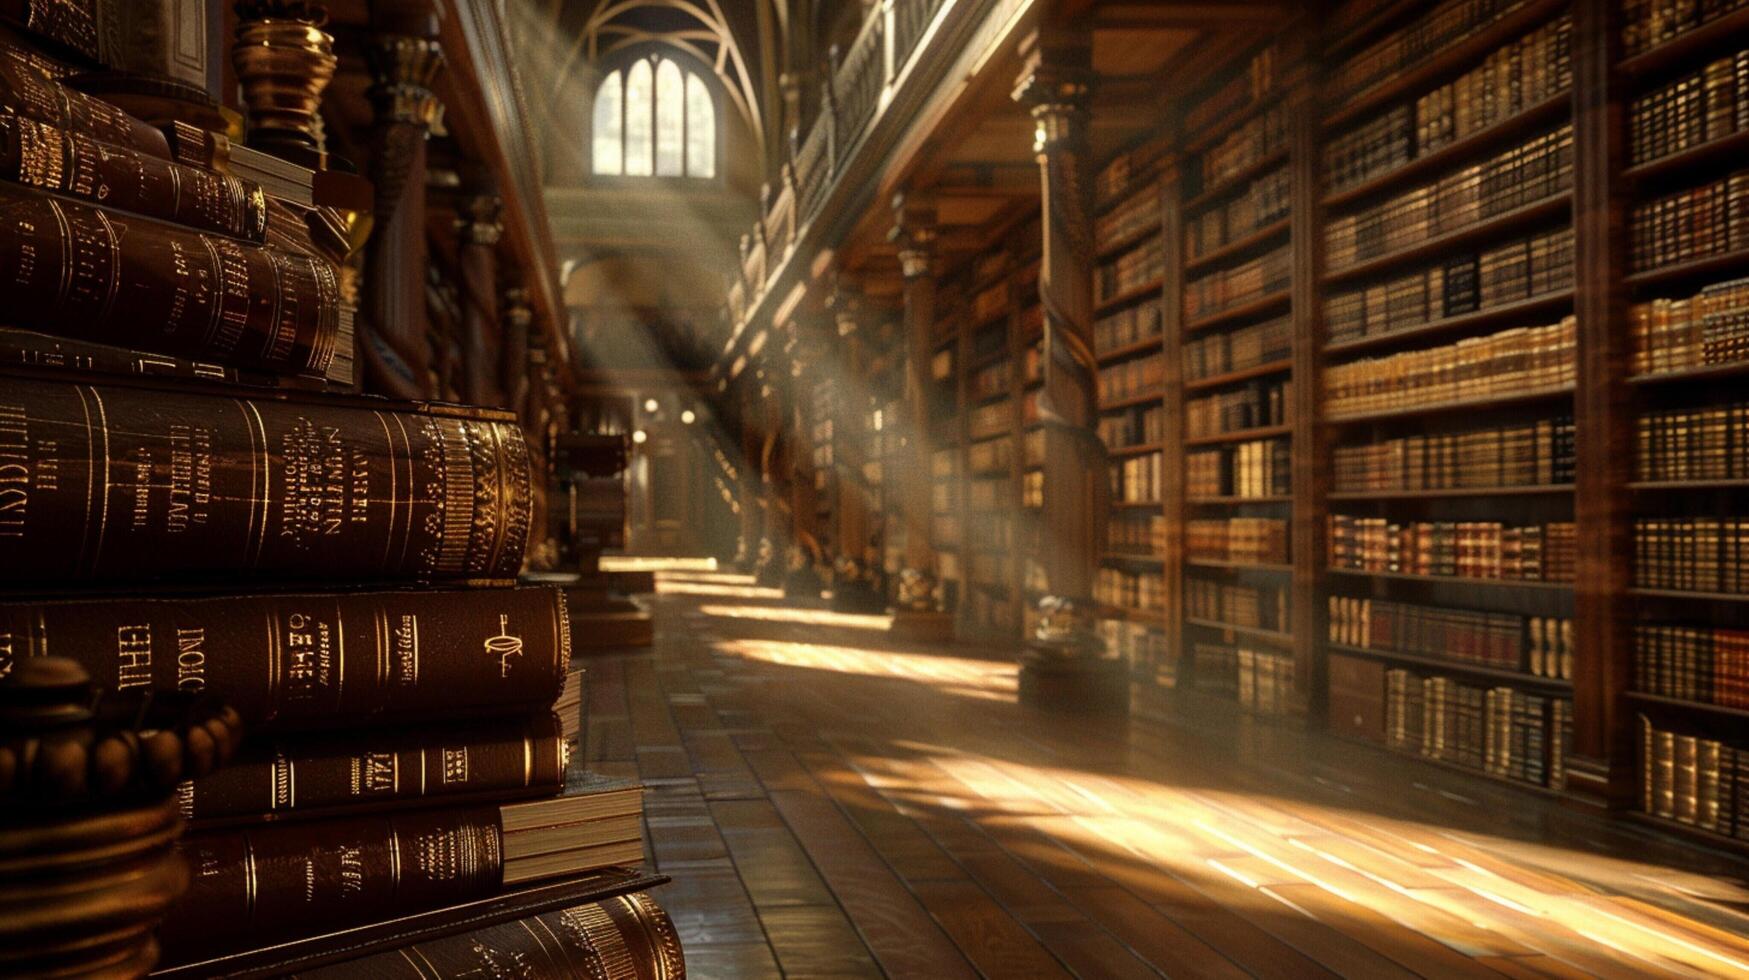 ancient bible illuminates dark library with wisdom photo